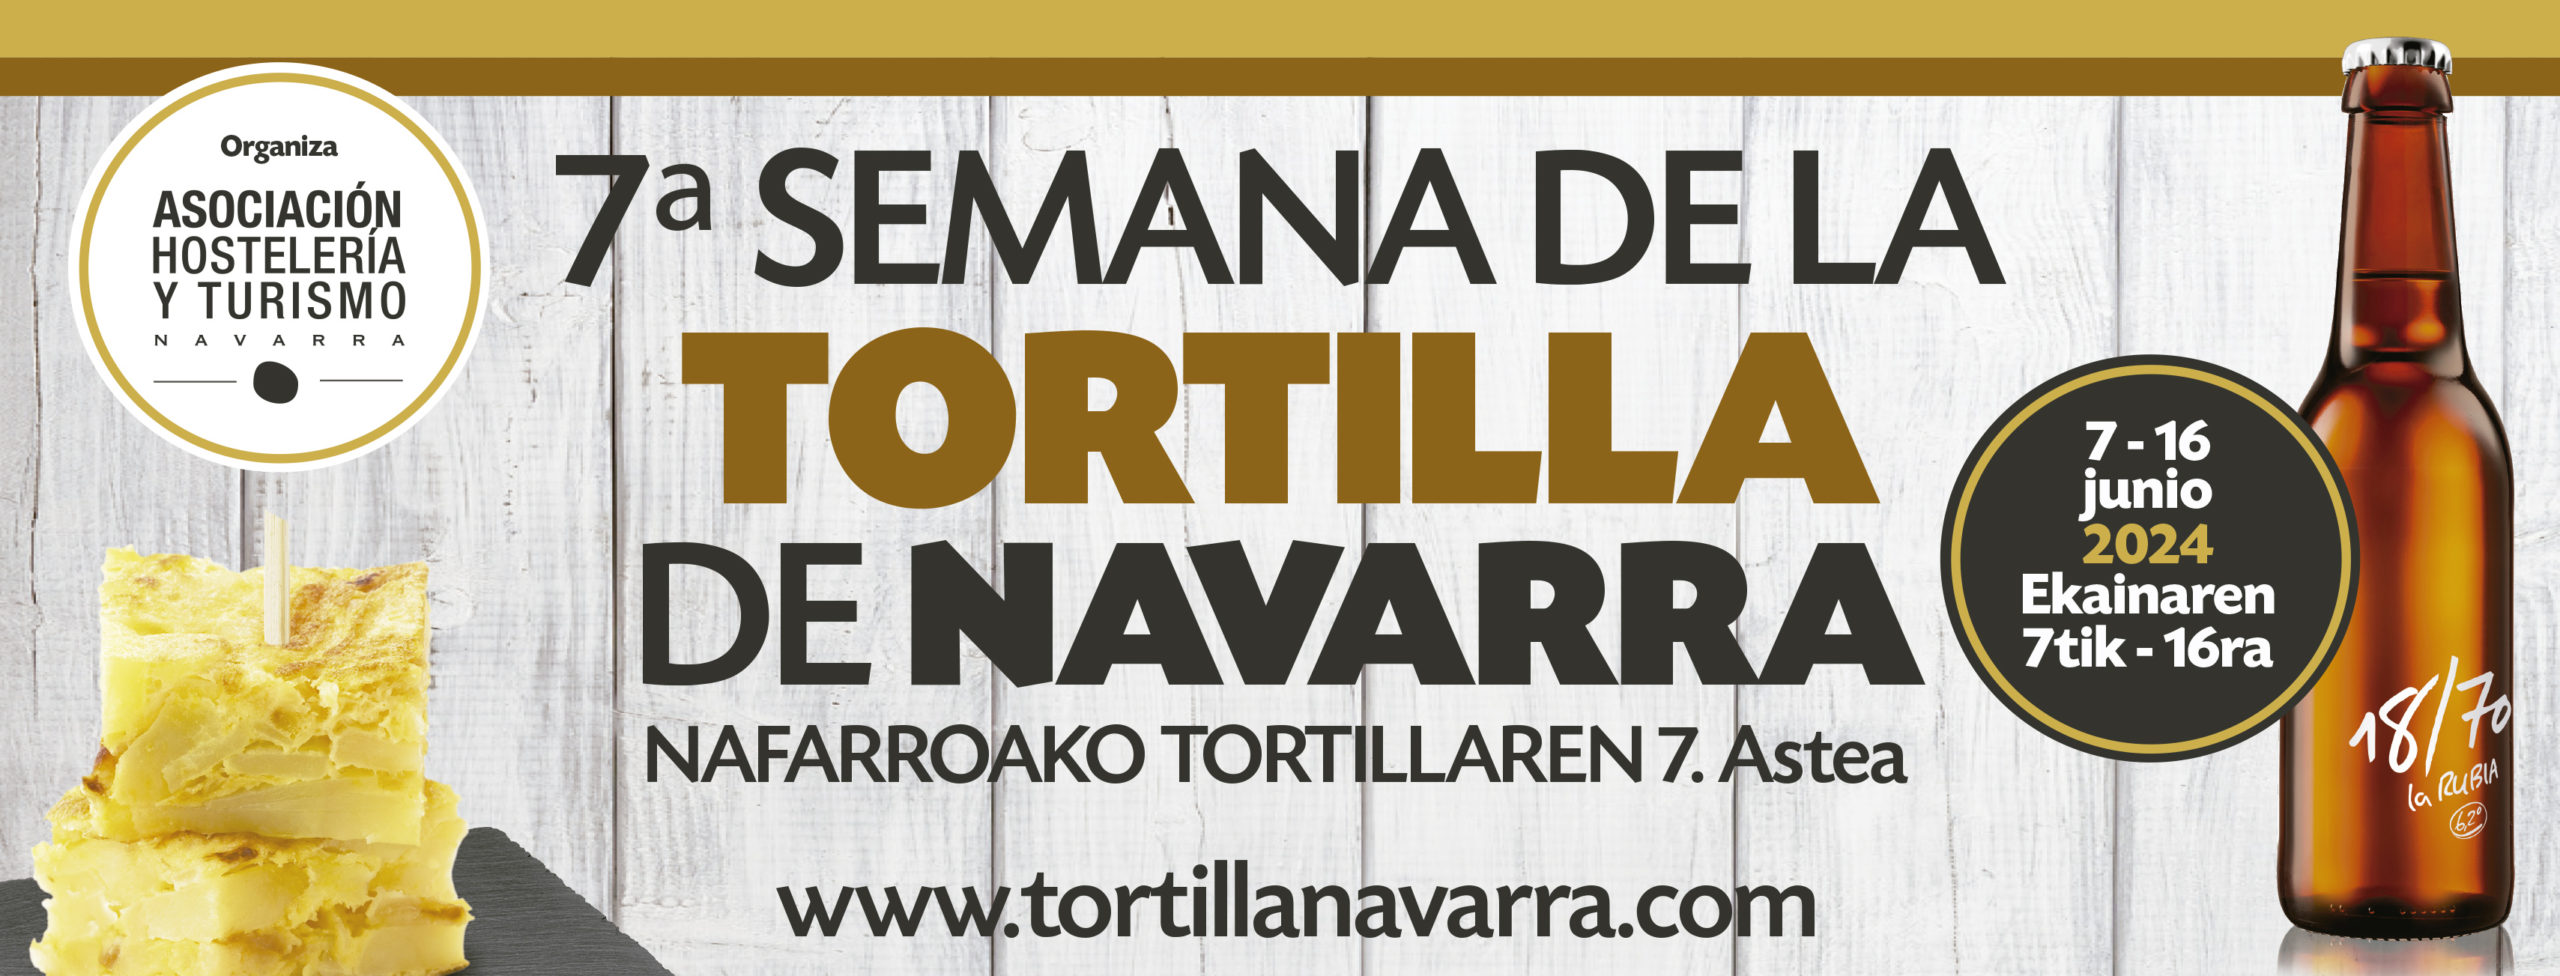 Cabecera publicitaria 7ª Semana de la Tortilla Navarra, fechas y web. Euskera y Castellano